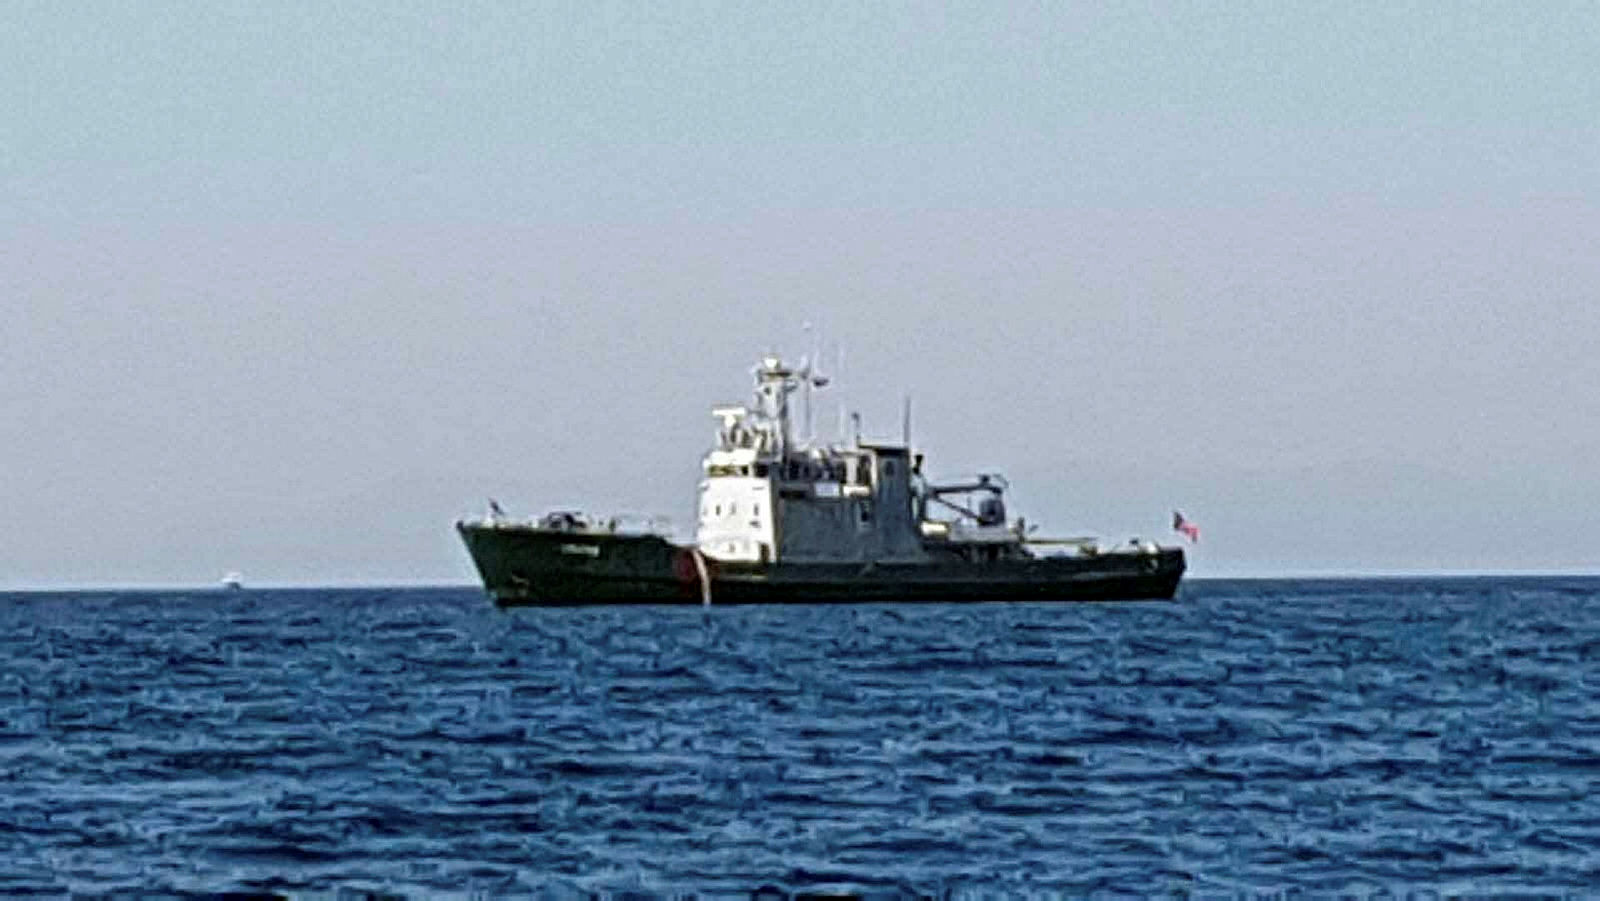 Yunan askeri araştırma gemisi Kuşadası Körfezi’nde görüntülendi